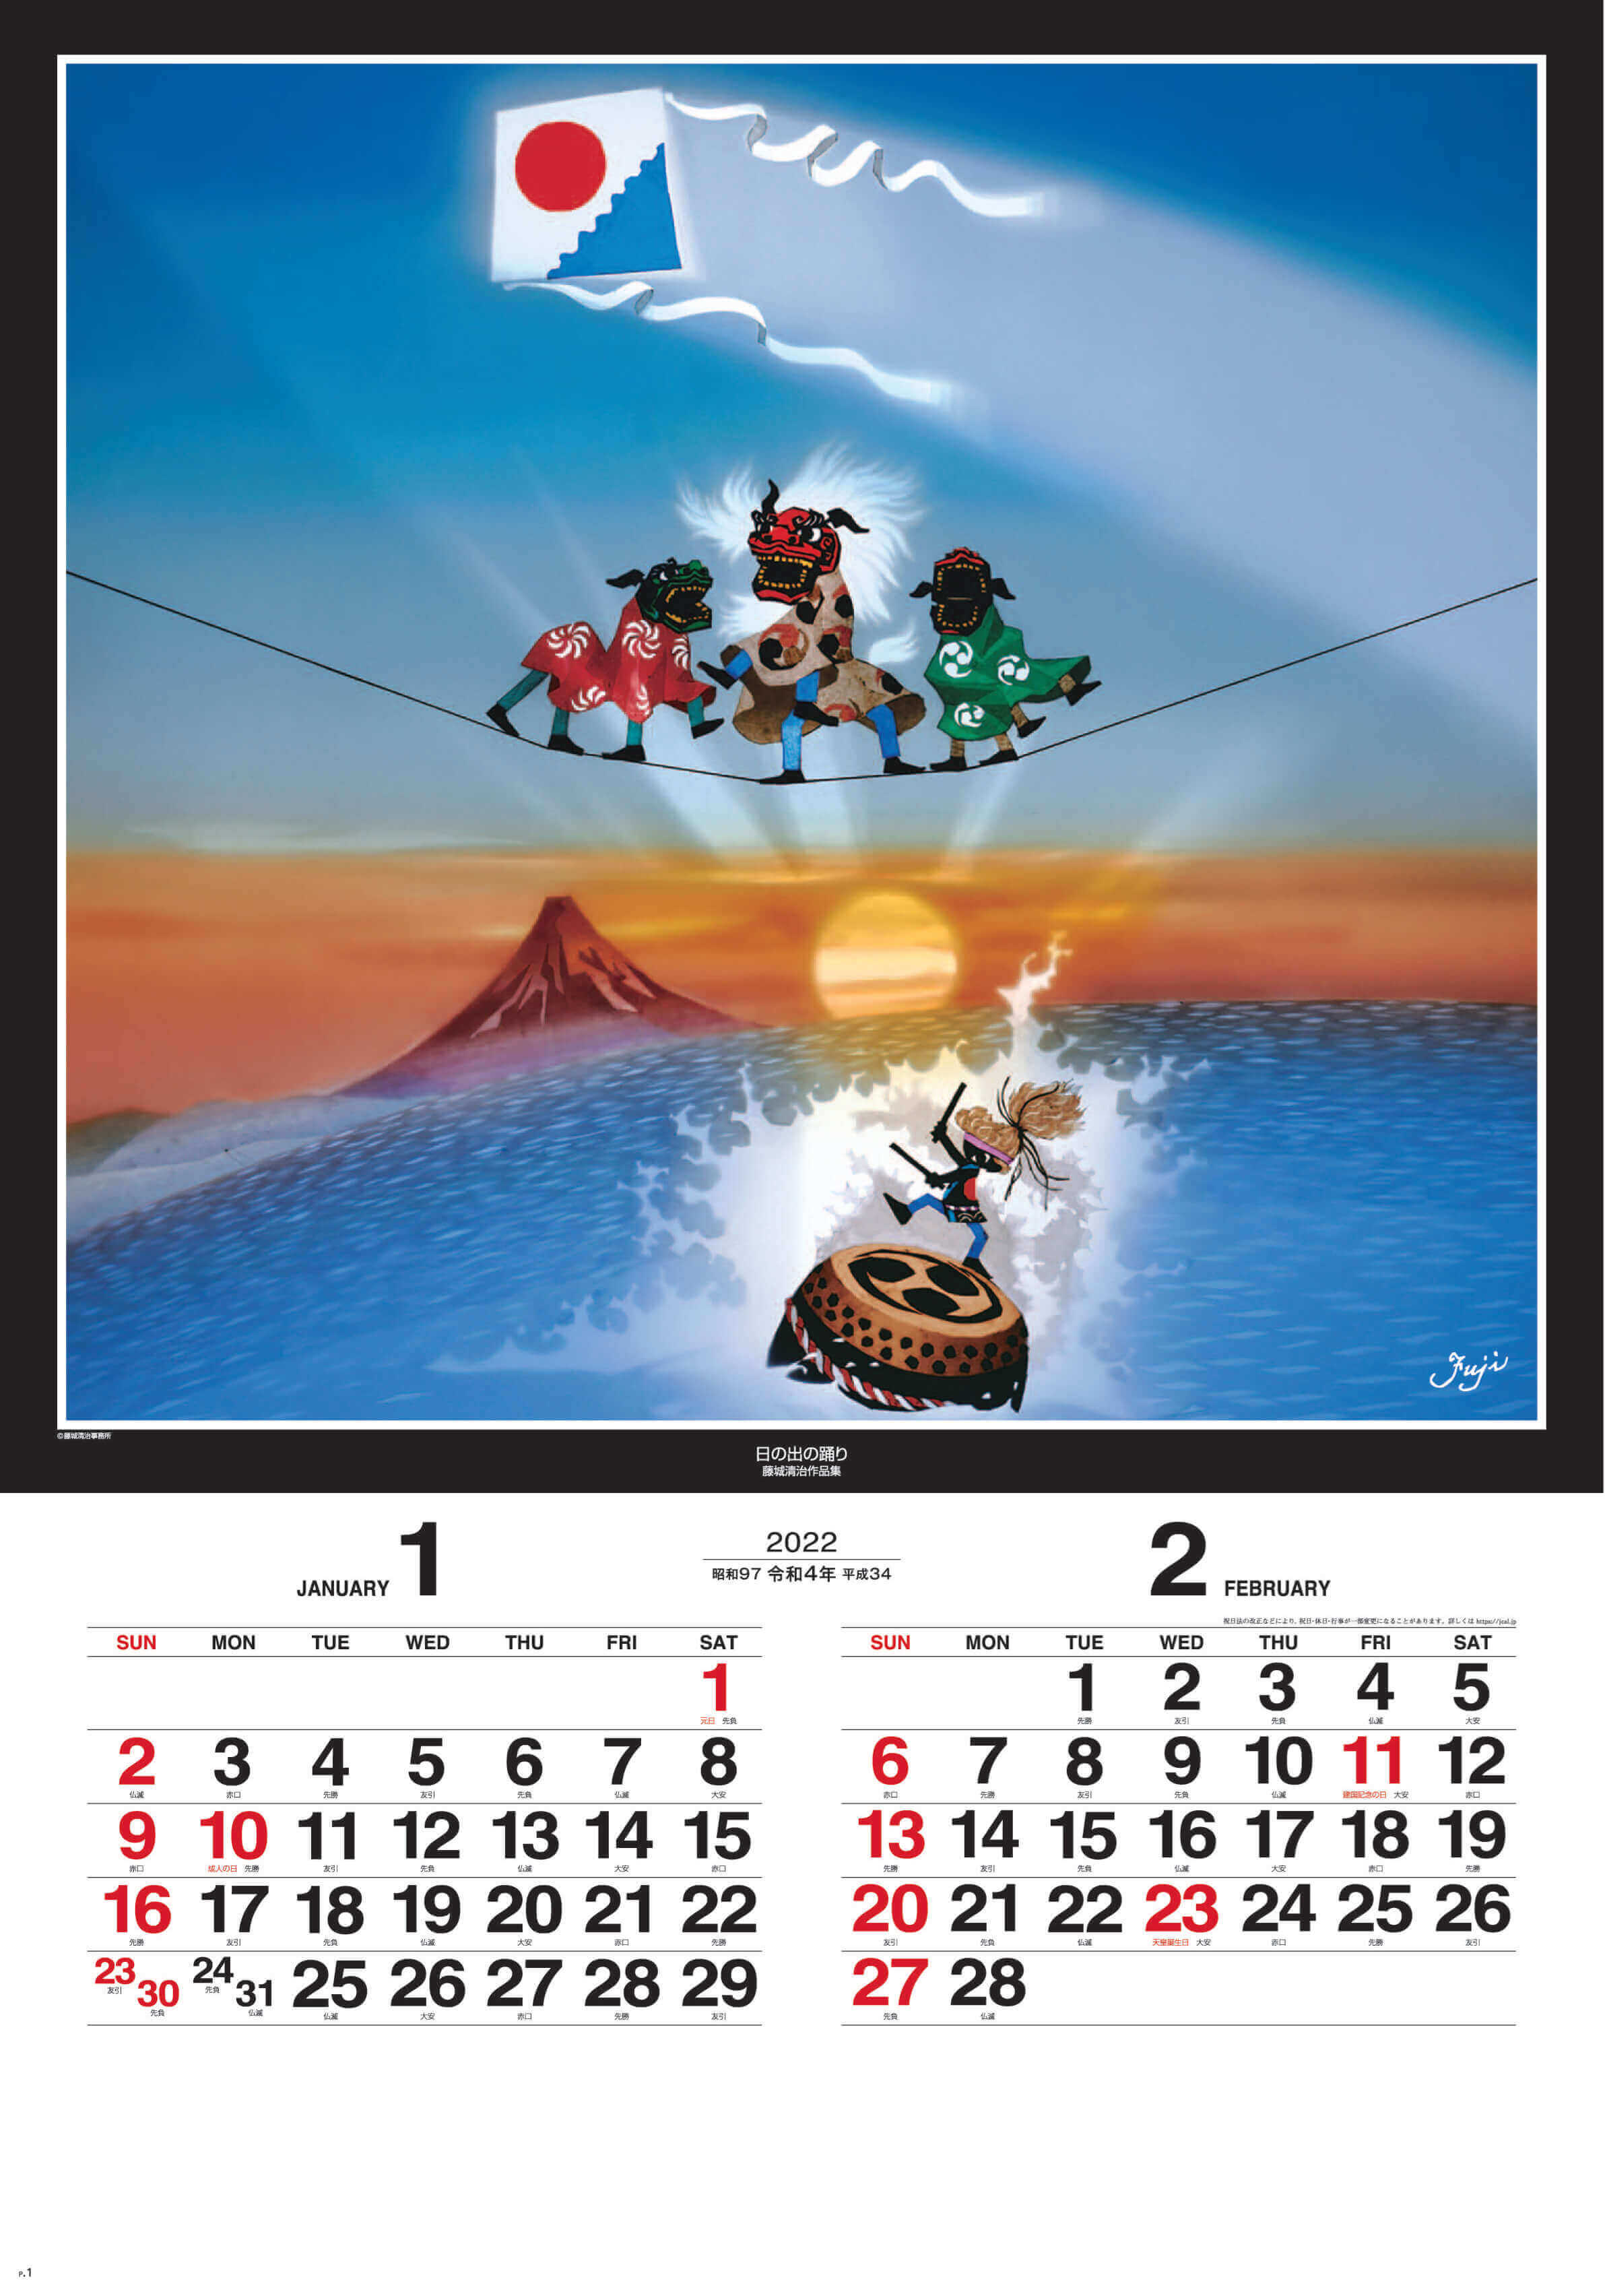 1-2月 日の出の踊り 遠い日の風景から(影絵)(フィルムカレンダー) 藤城清治 2022年カレンダーの画像